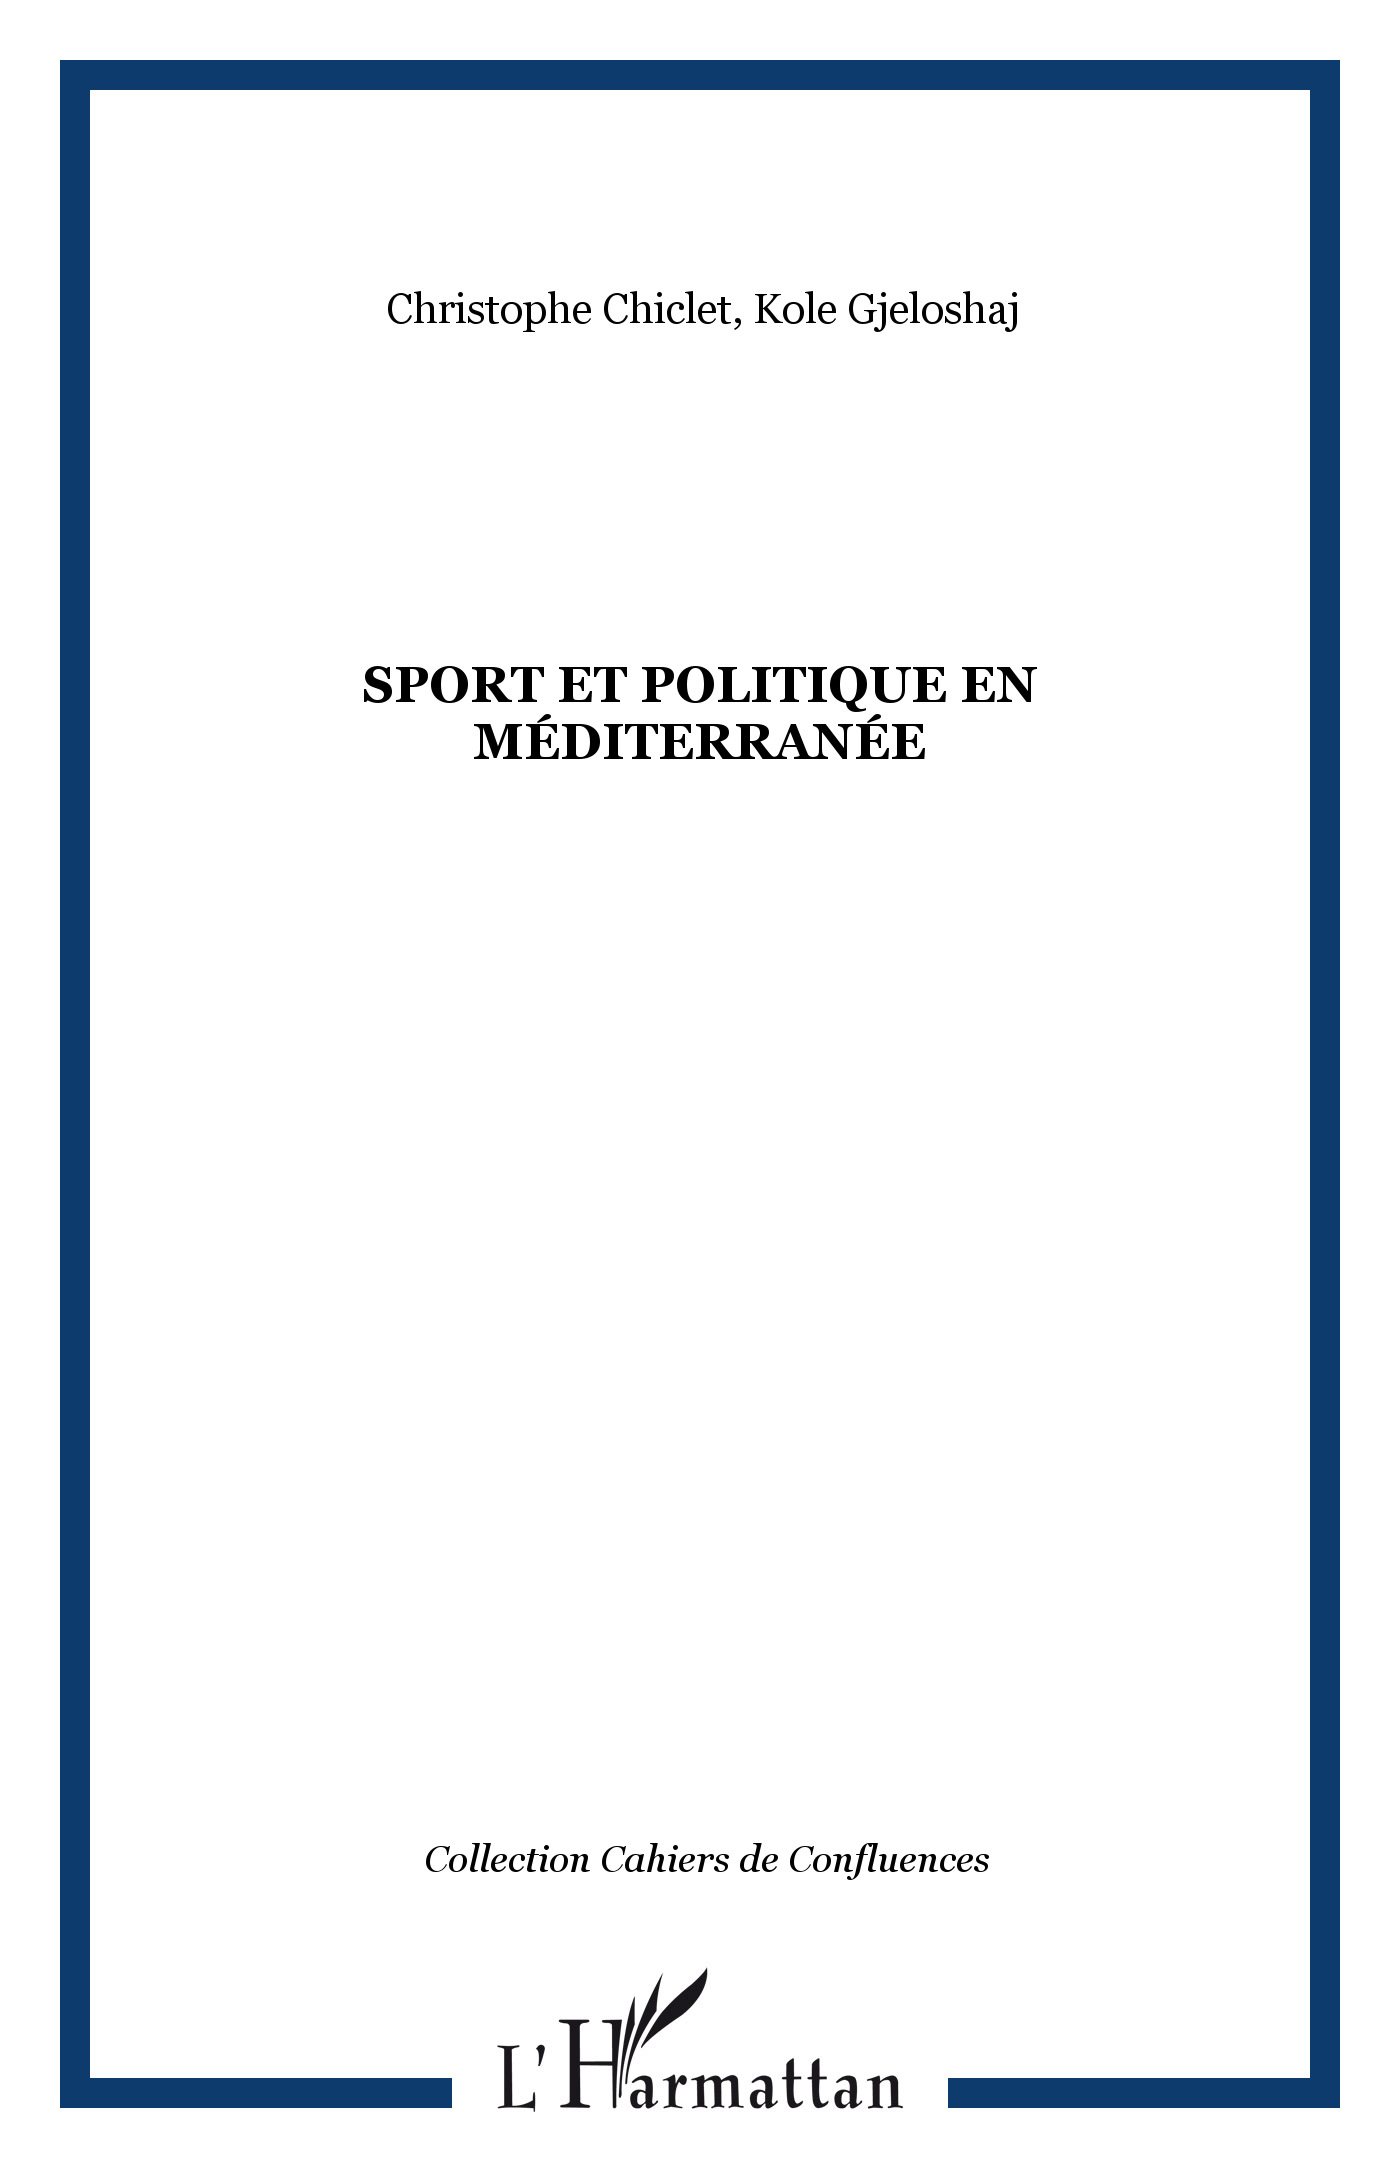 Couverture du livre "Sport et politique en Méditerranée"